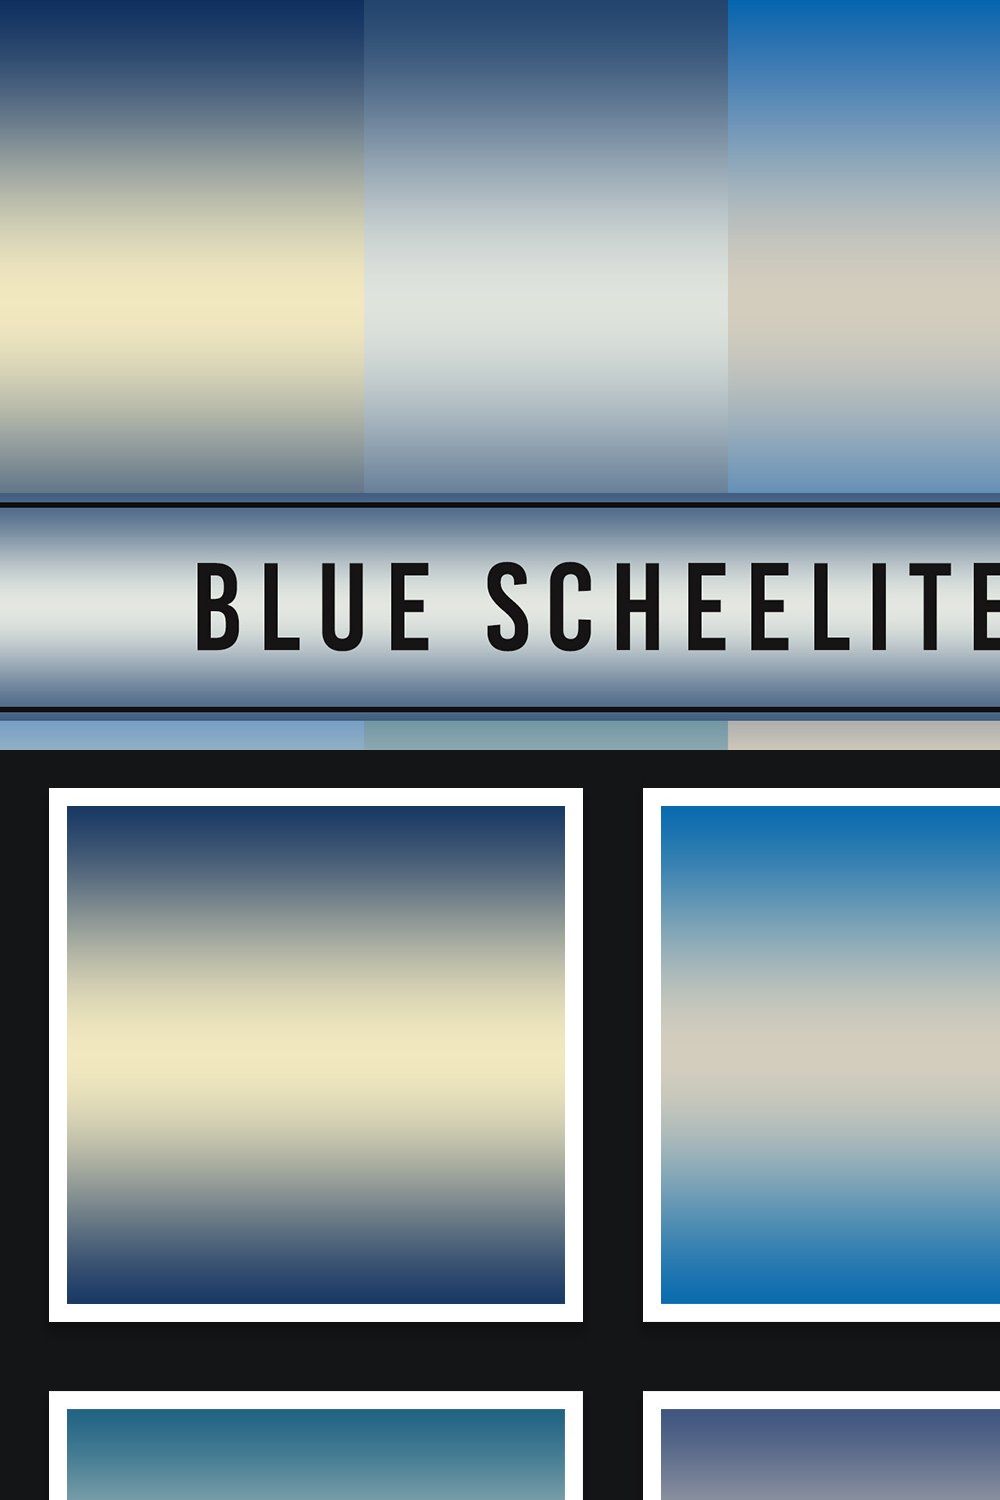 Blue Scheelite Gradients pinterest preview image.